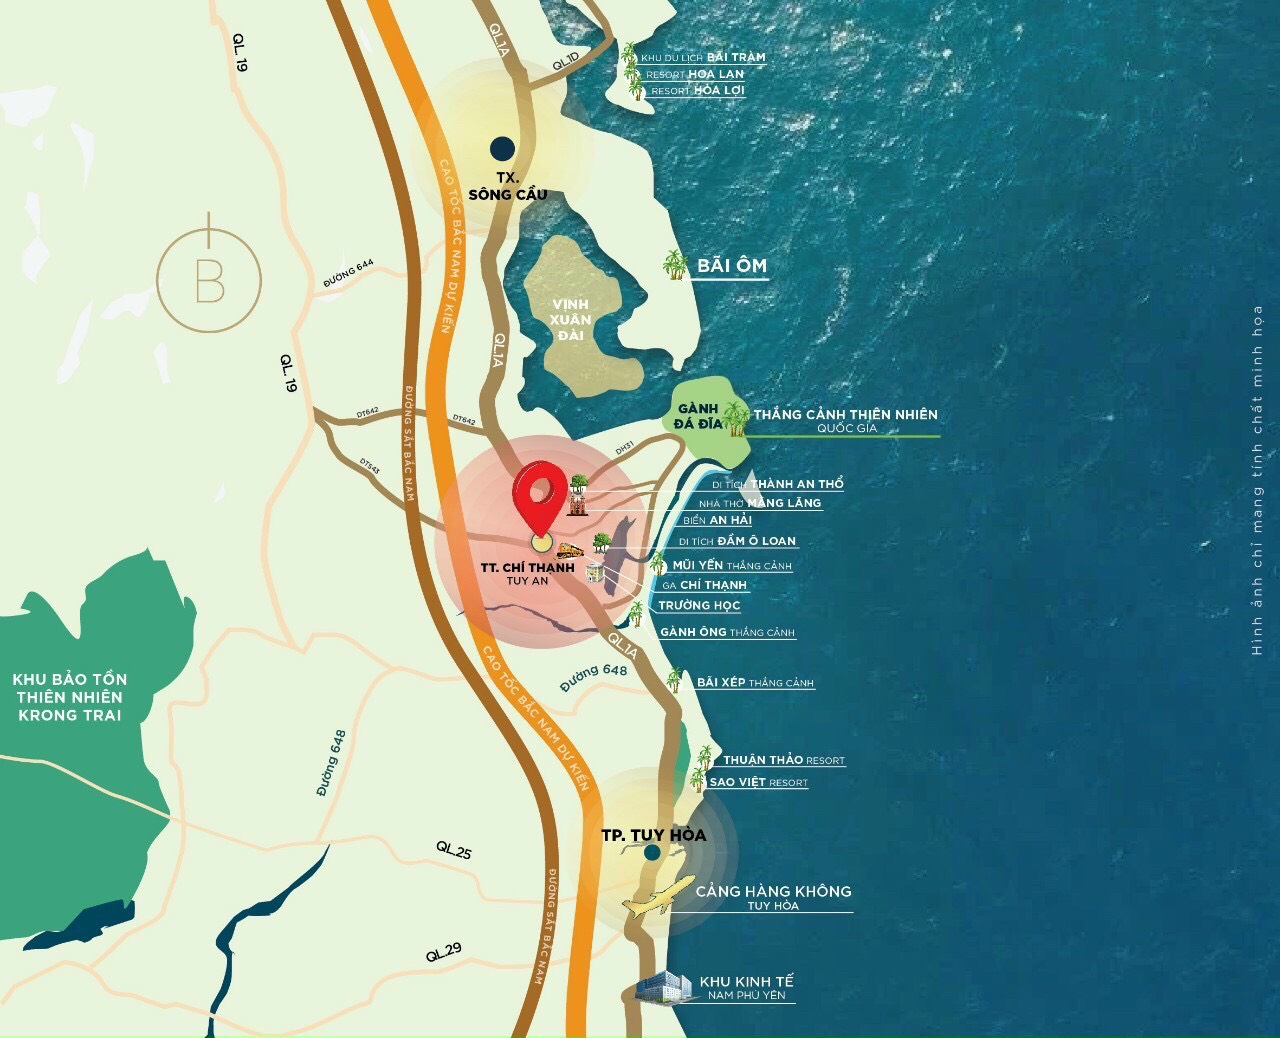 Đất nền ven biển Khu dân cư Đồng Đèo - Phú Yên, sổ đỏ từng nền, giá chỉ từ 2tr9/m2 4